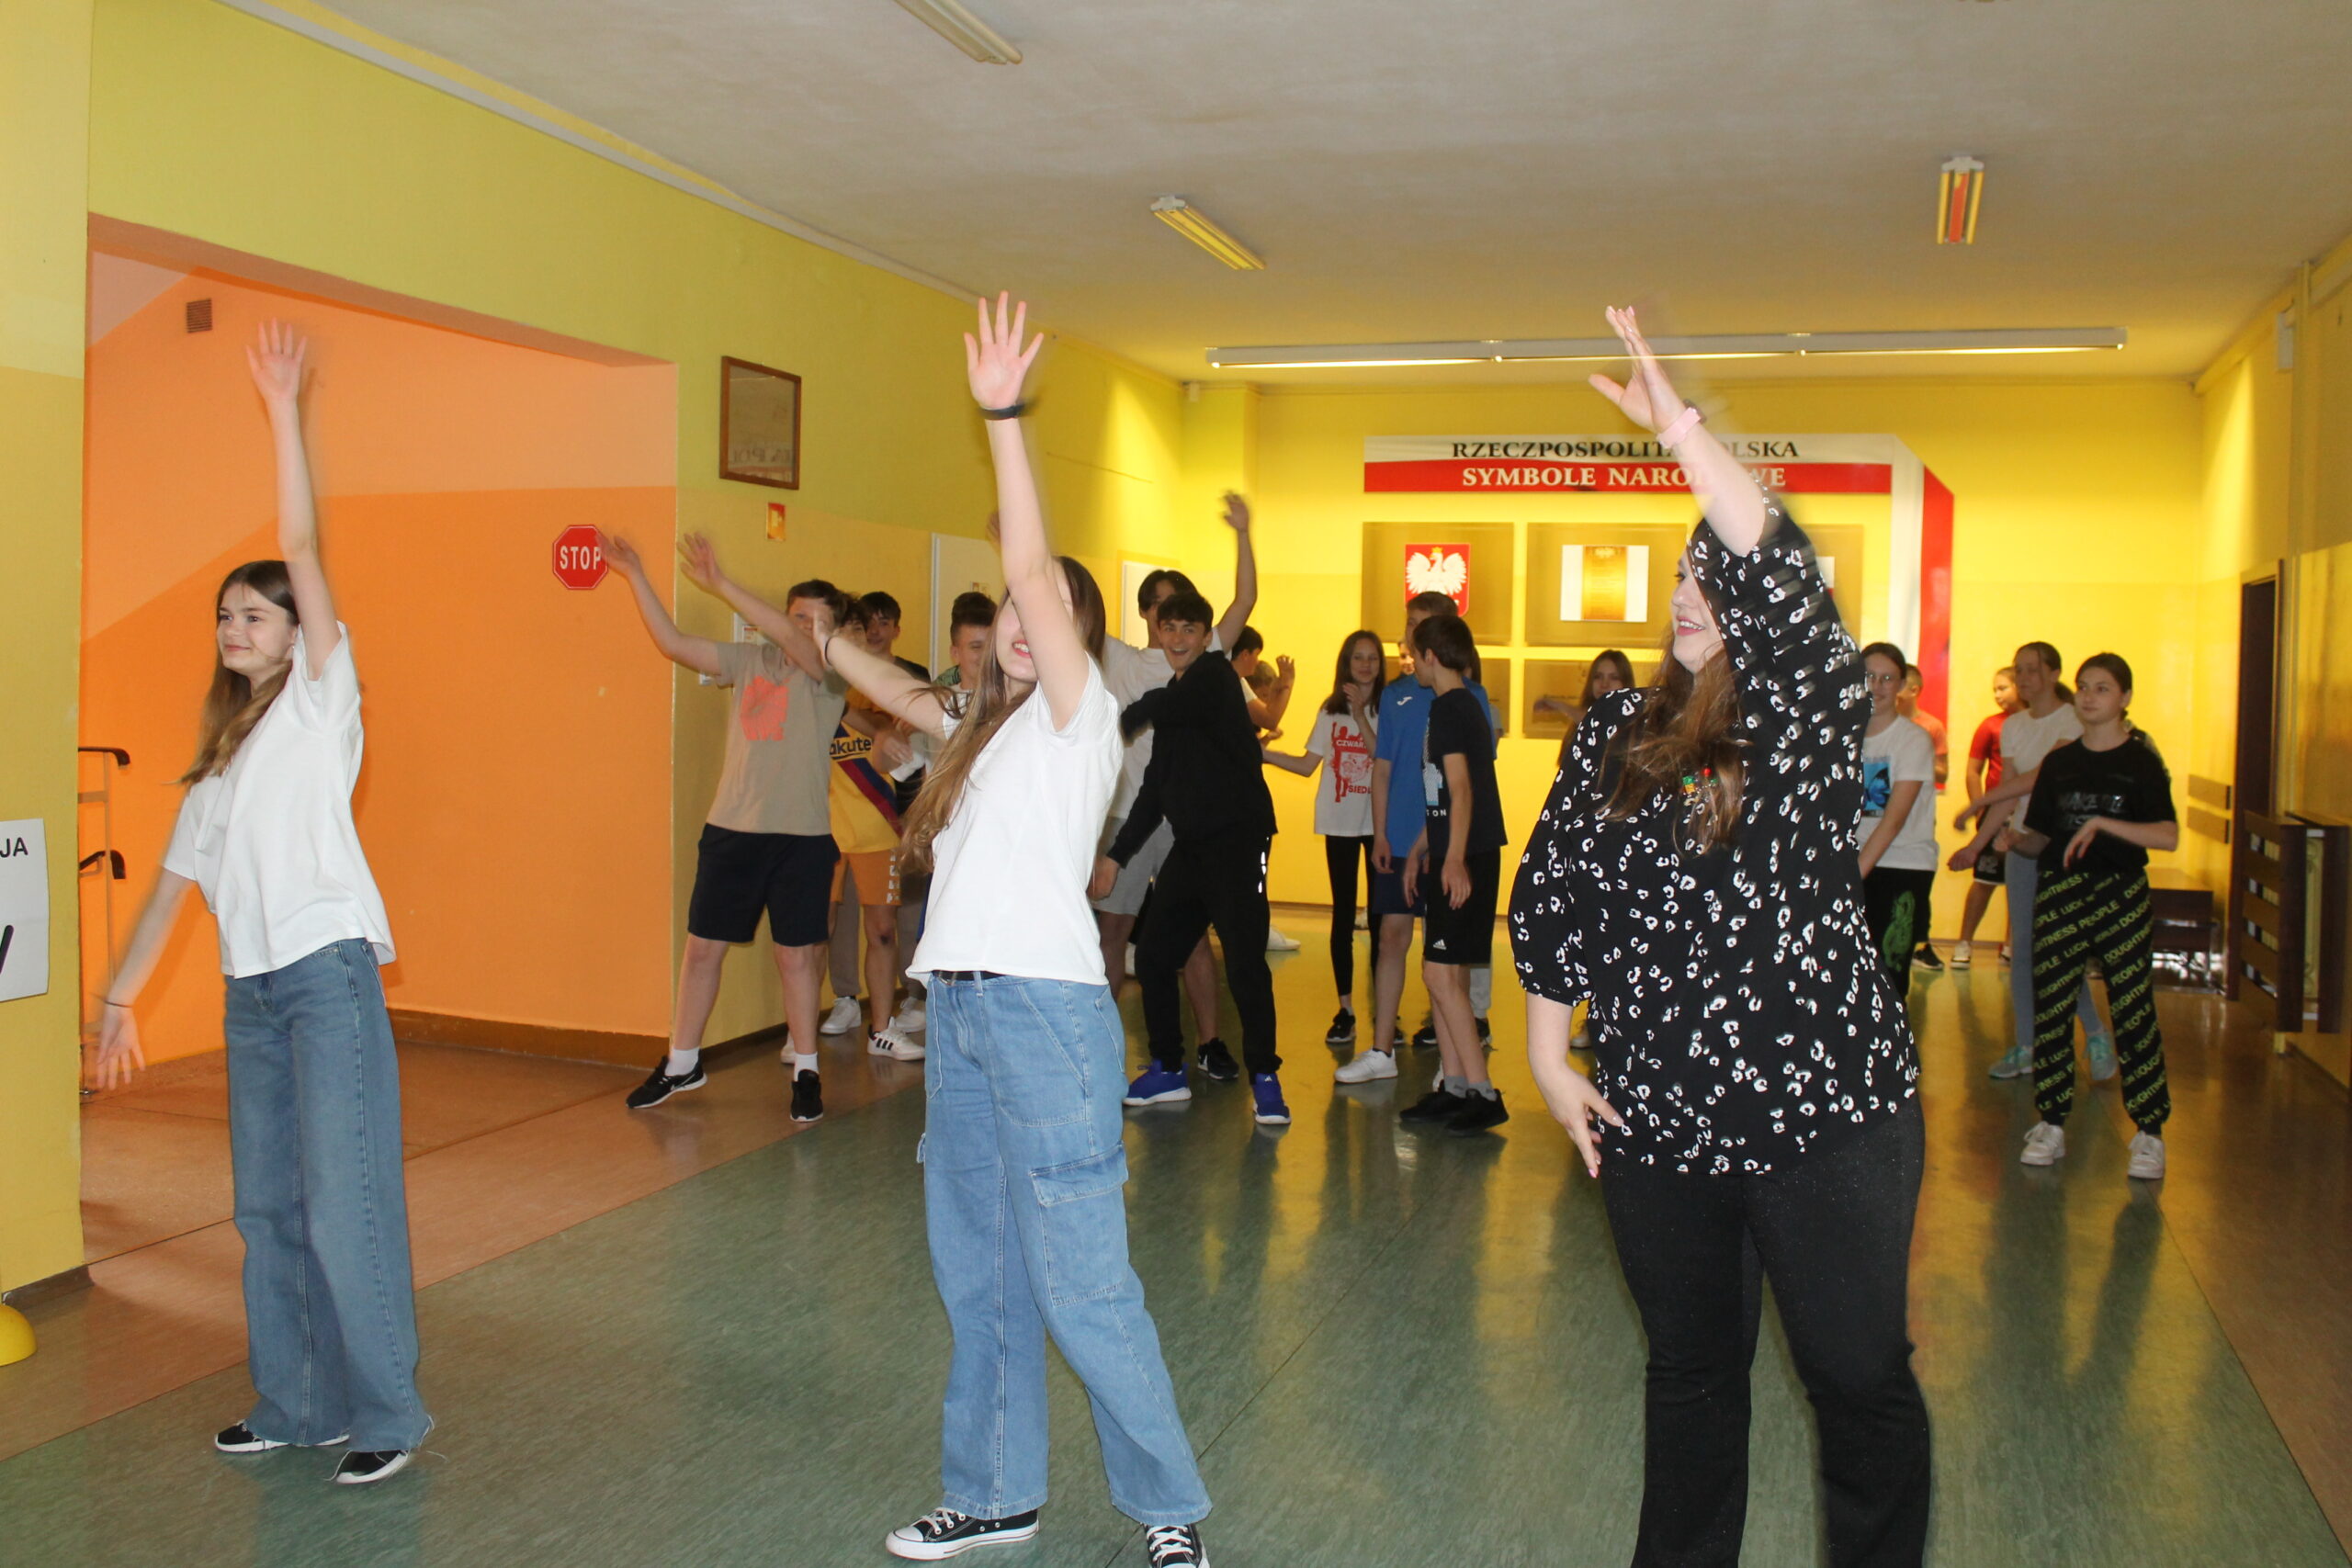 Święto Szkoły maj 2023. Uczniowie po uroczystej akademii biorą udział w zabawach na terenie szkoły - taniec